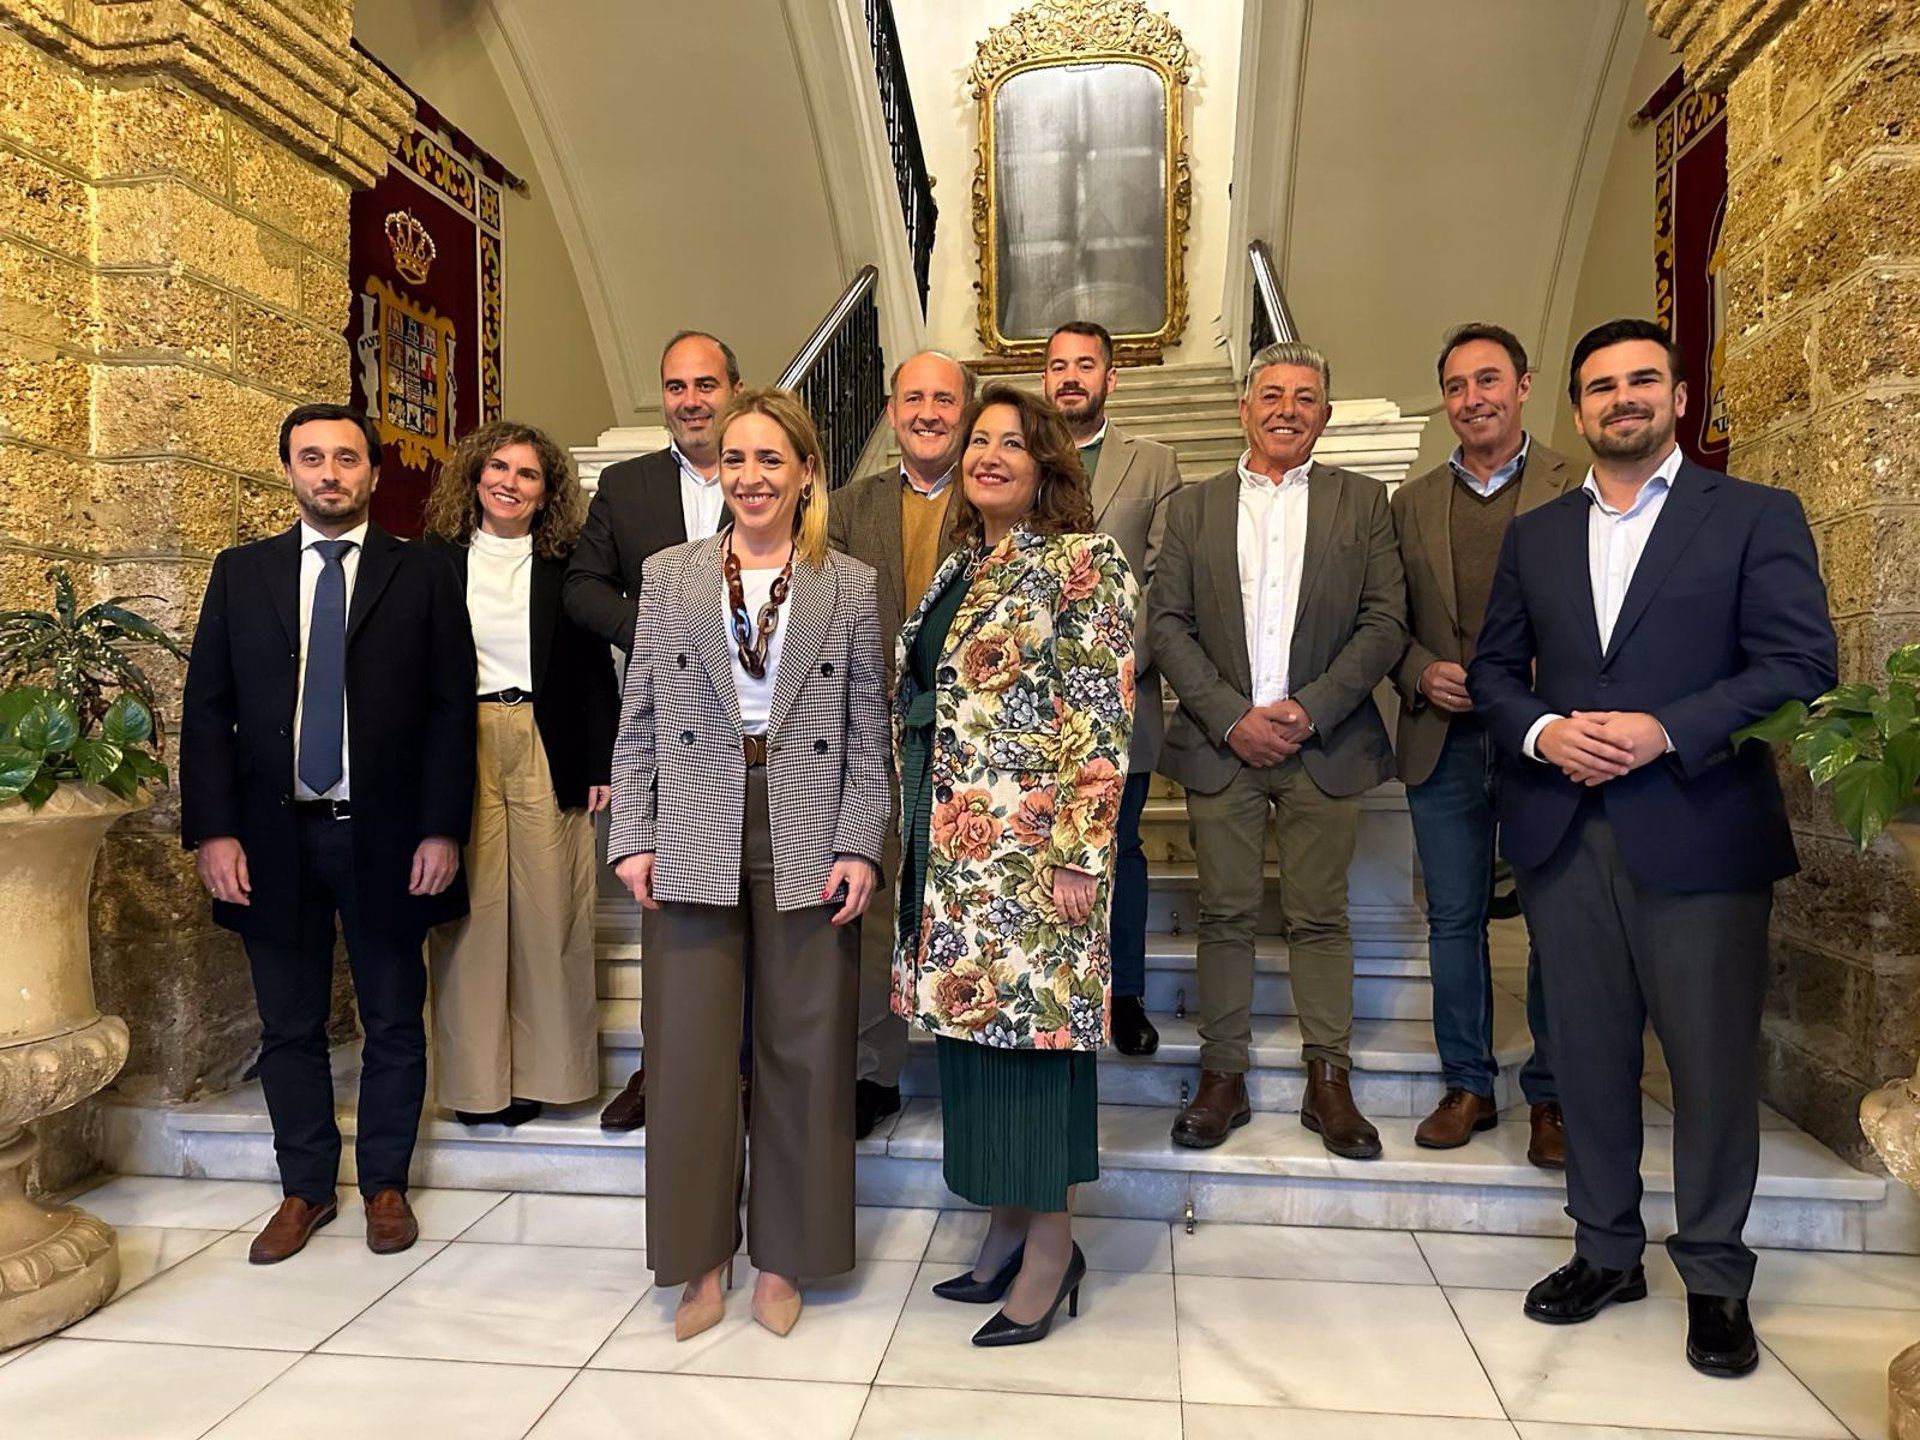 Un momento de la visita institucional de la consejera Carmen Crespo a Diputación. En la imagen, junto a la presidenta Almudena Martínez y otros representantes políticos.